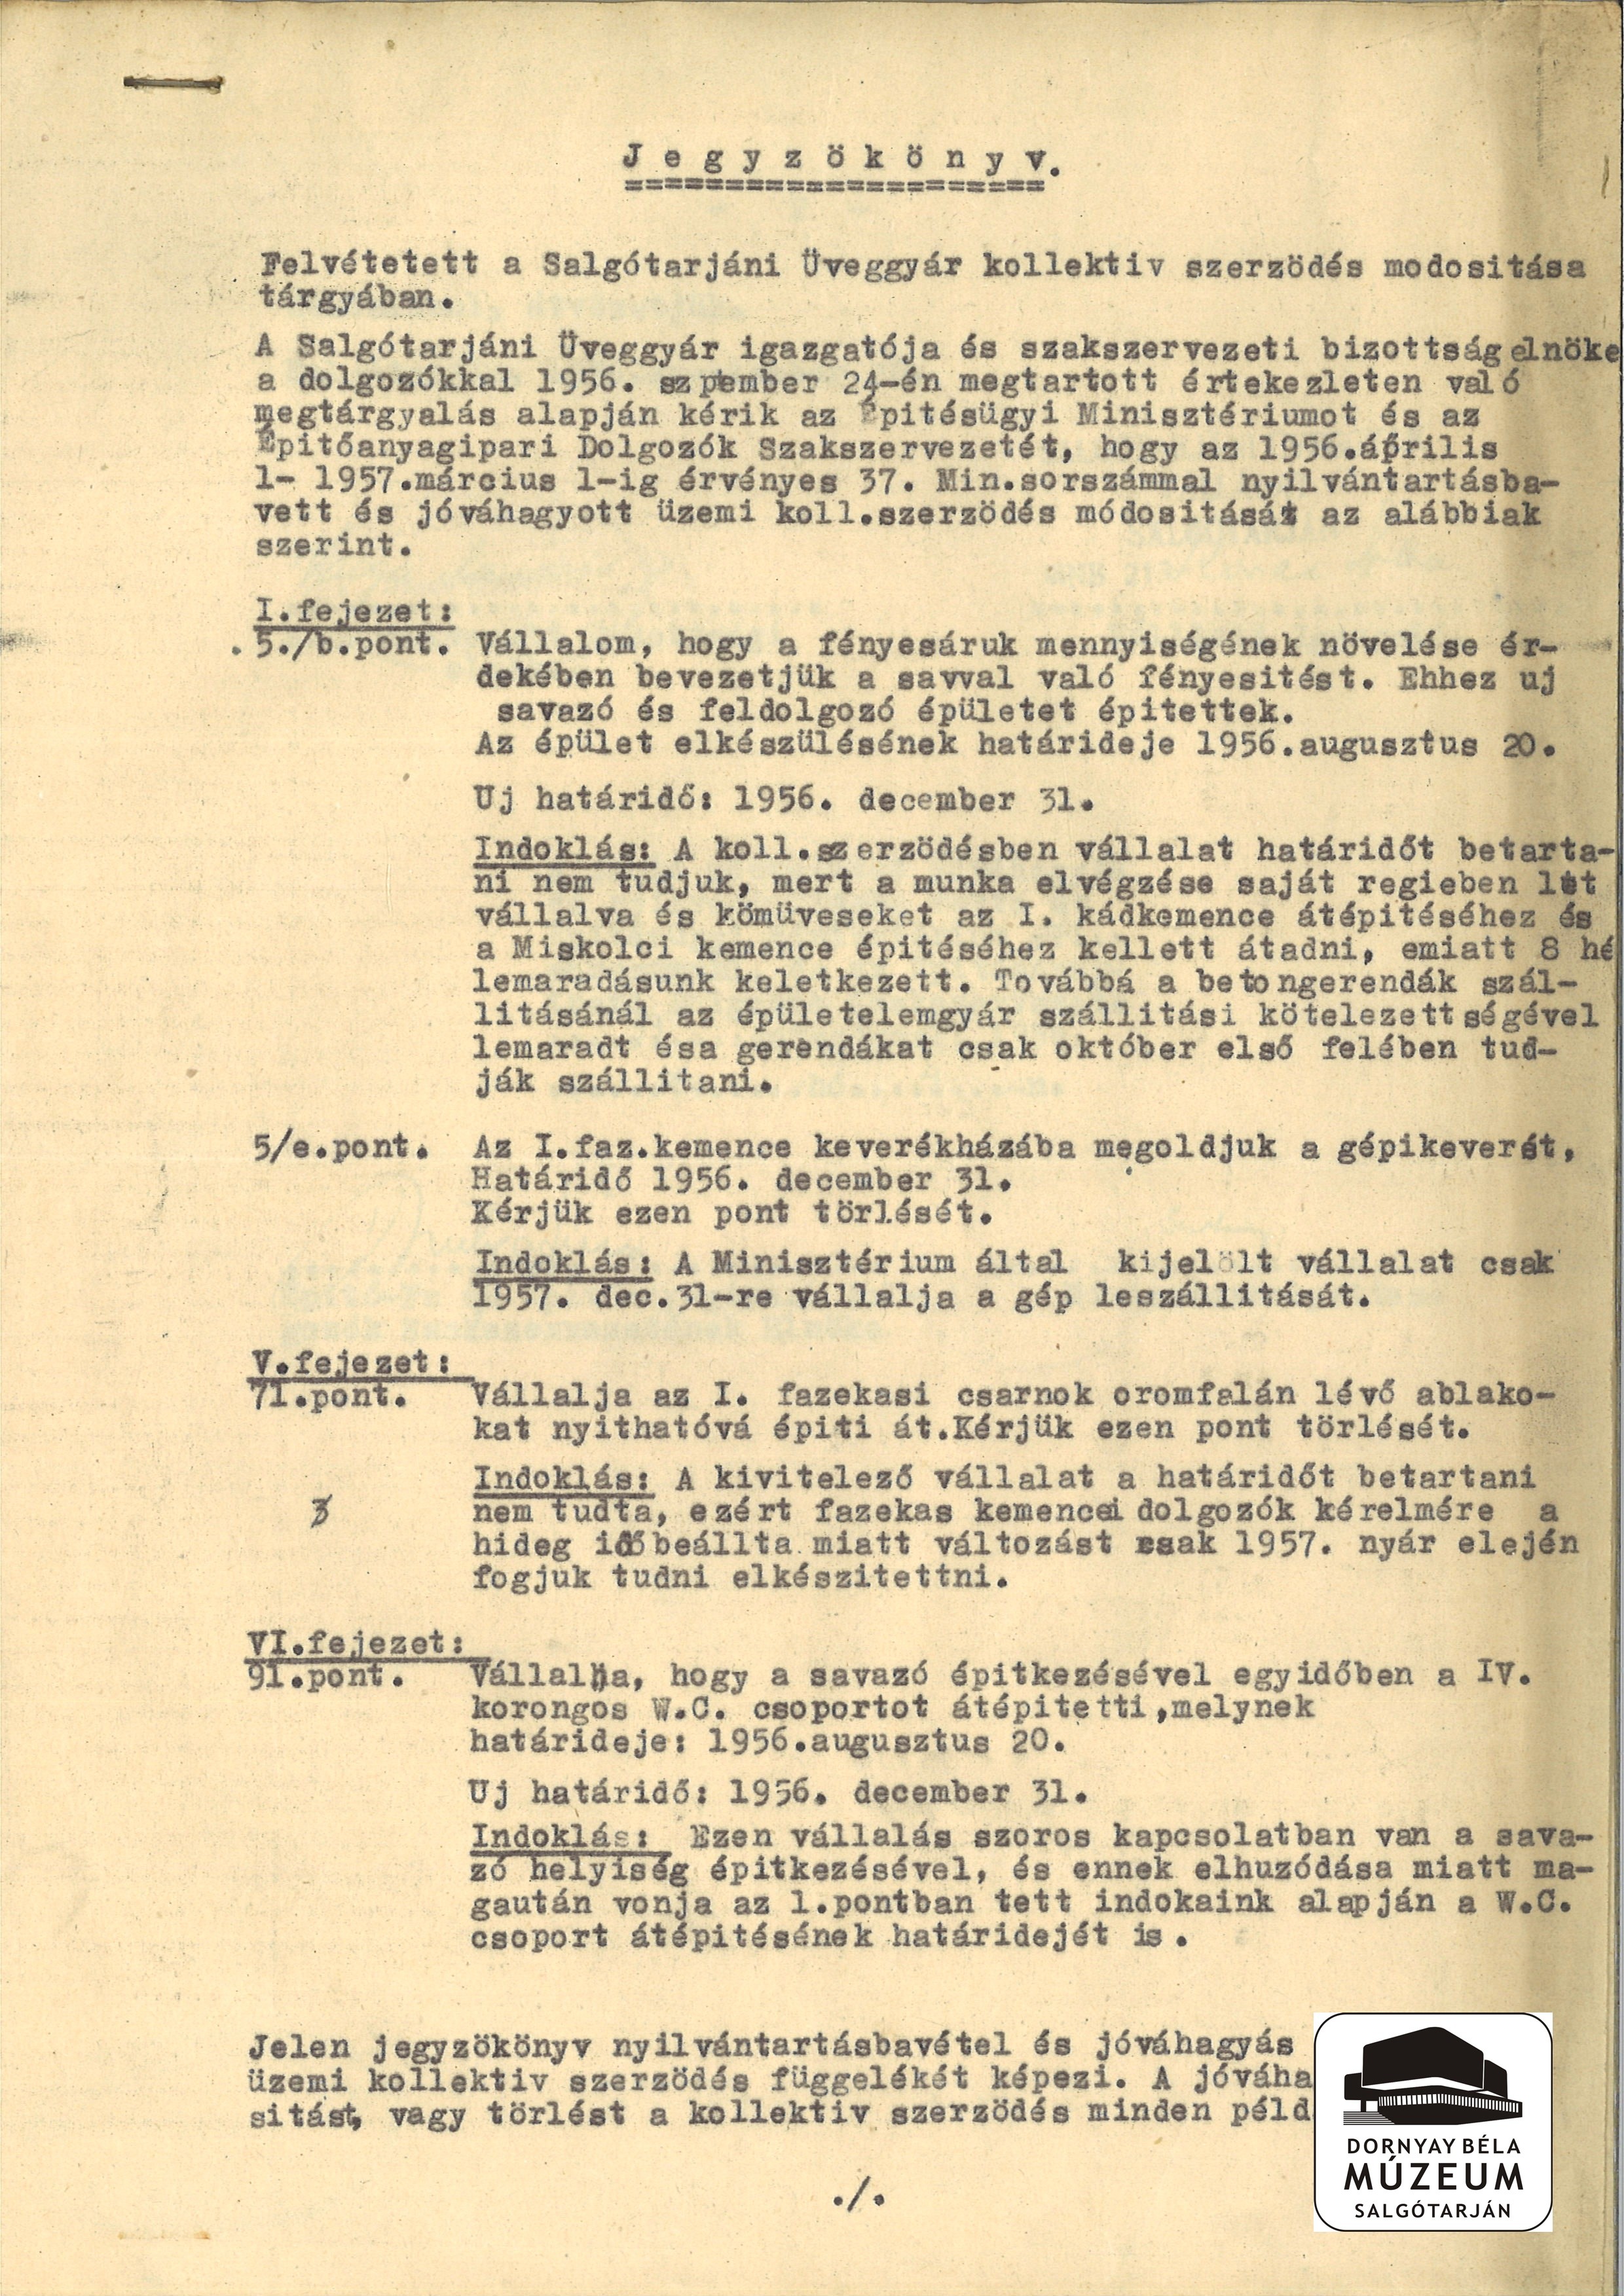 A Salgótarjáni Üveggyár szerződésének módosítása (Dornyay Béla Múzeum, Salgótarján CC BY-NC-SA)